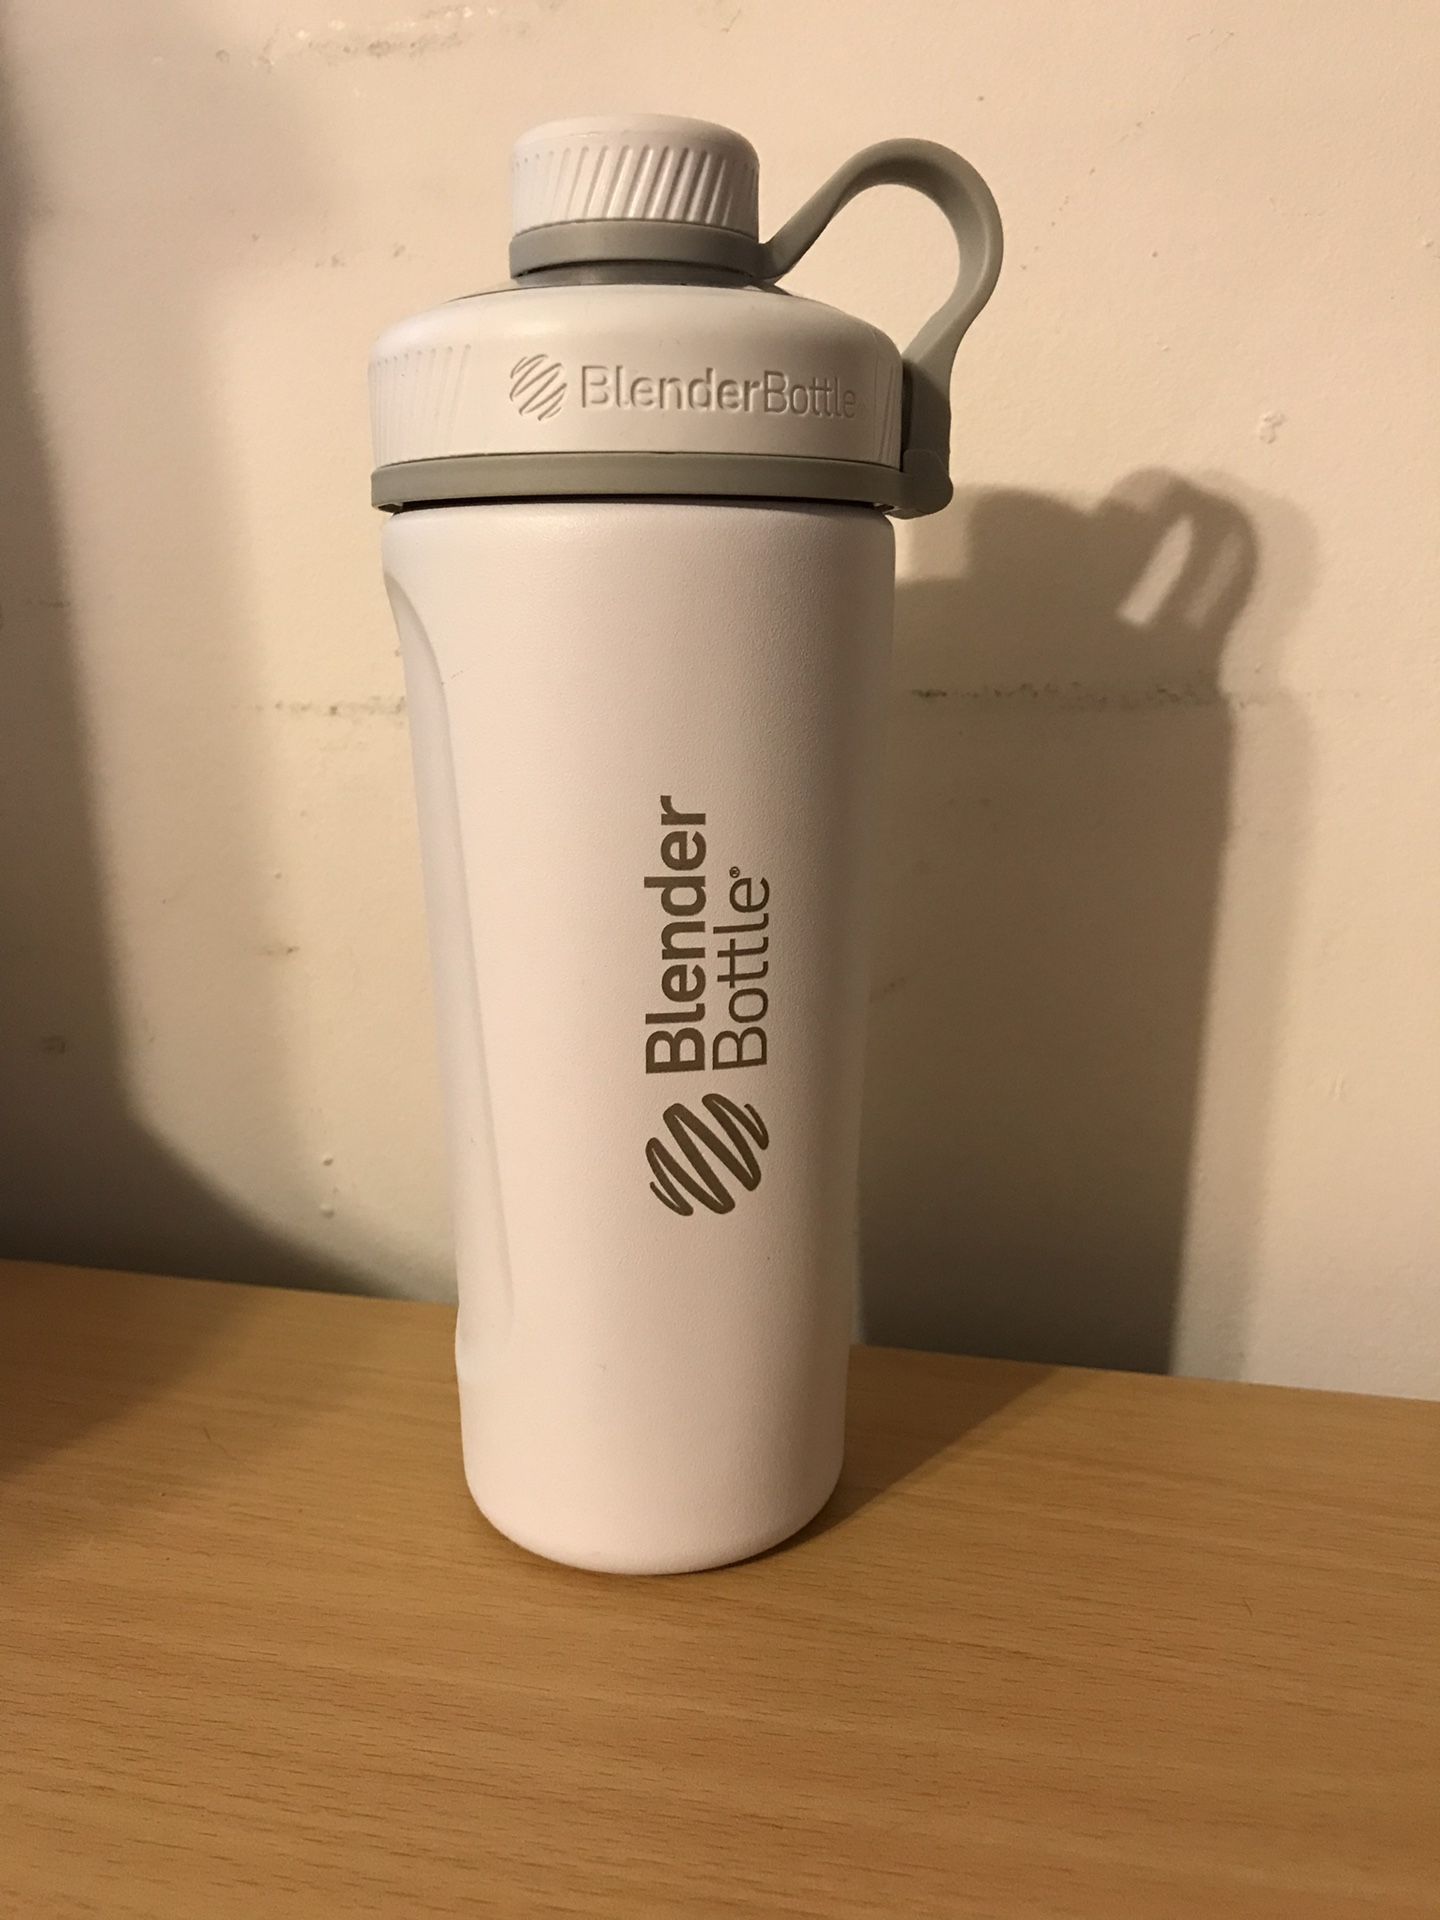 Blender bottle shaker